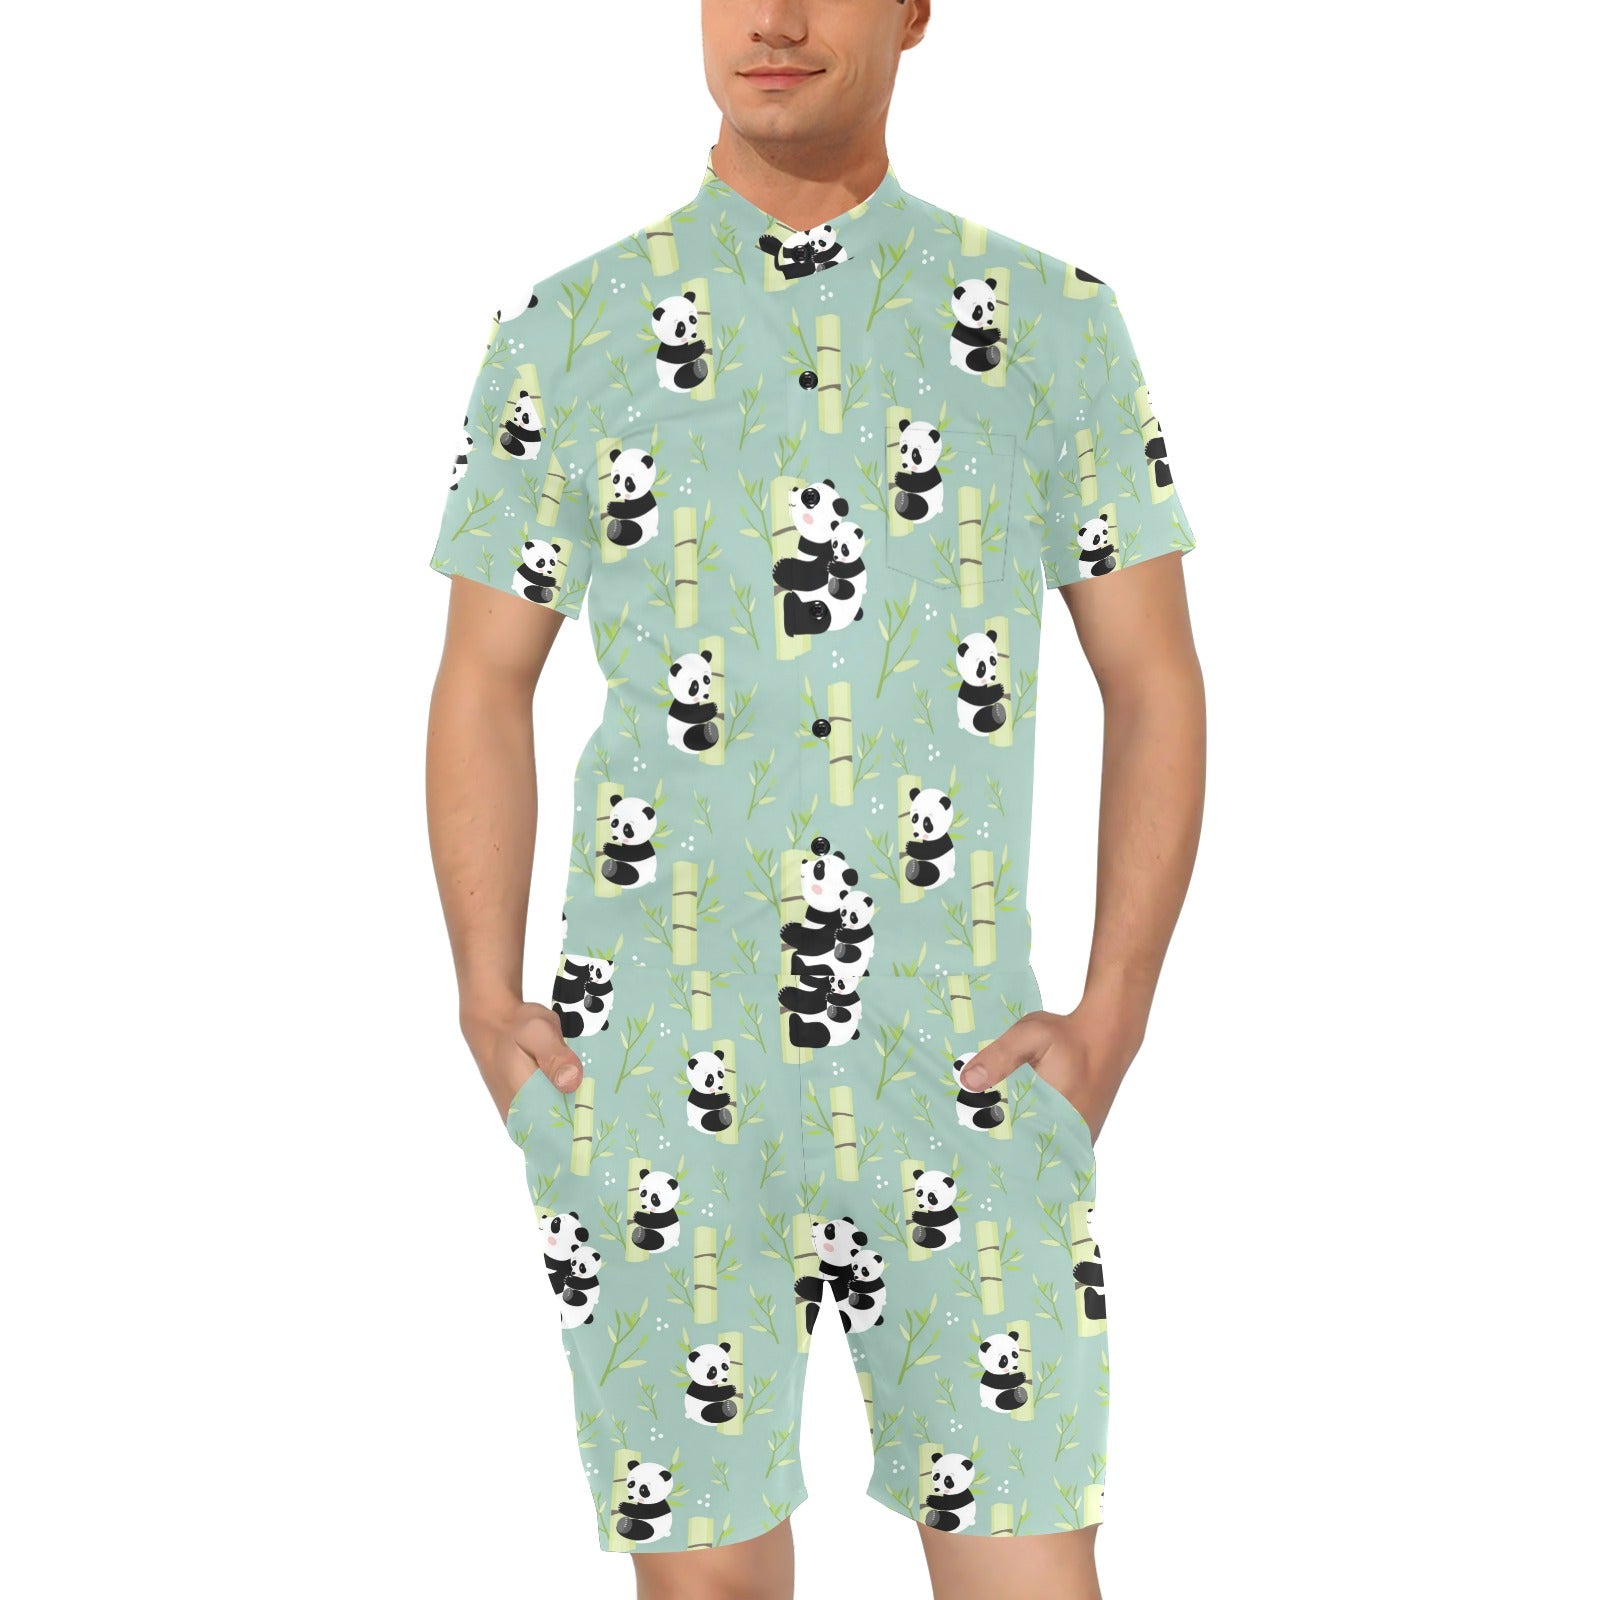 Panda Pattern Print Design A03 Men's Romper